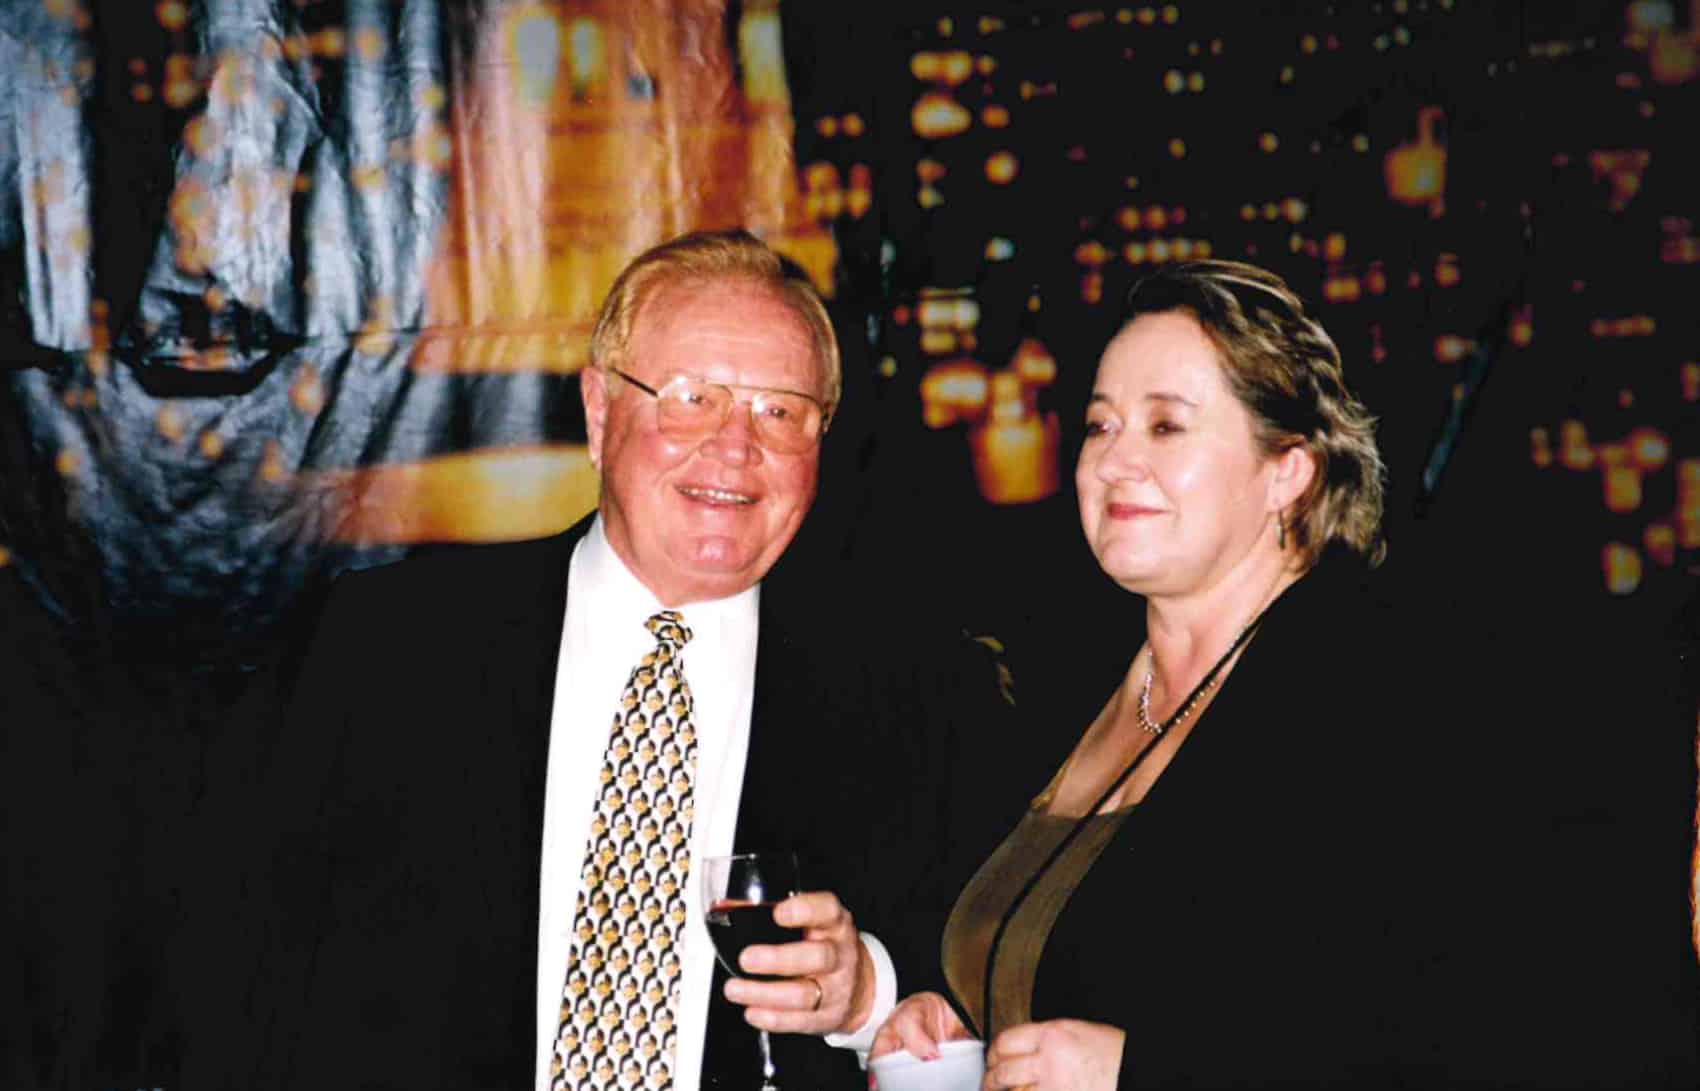 Mr. Garrett and Mrs. A.J. Xander, 1999